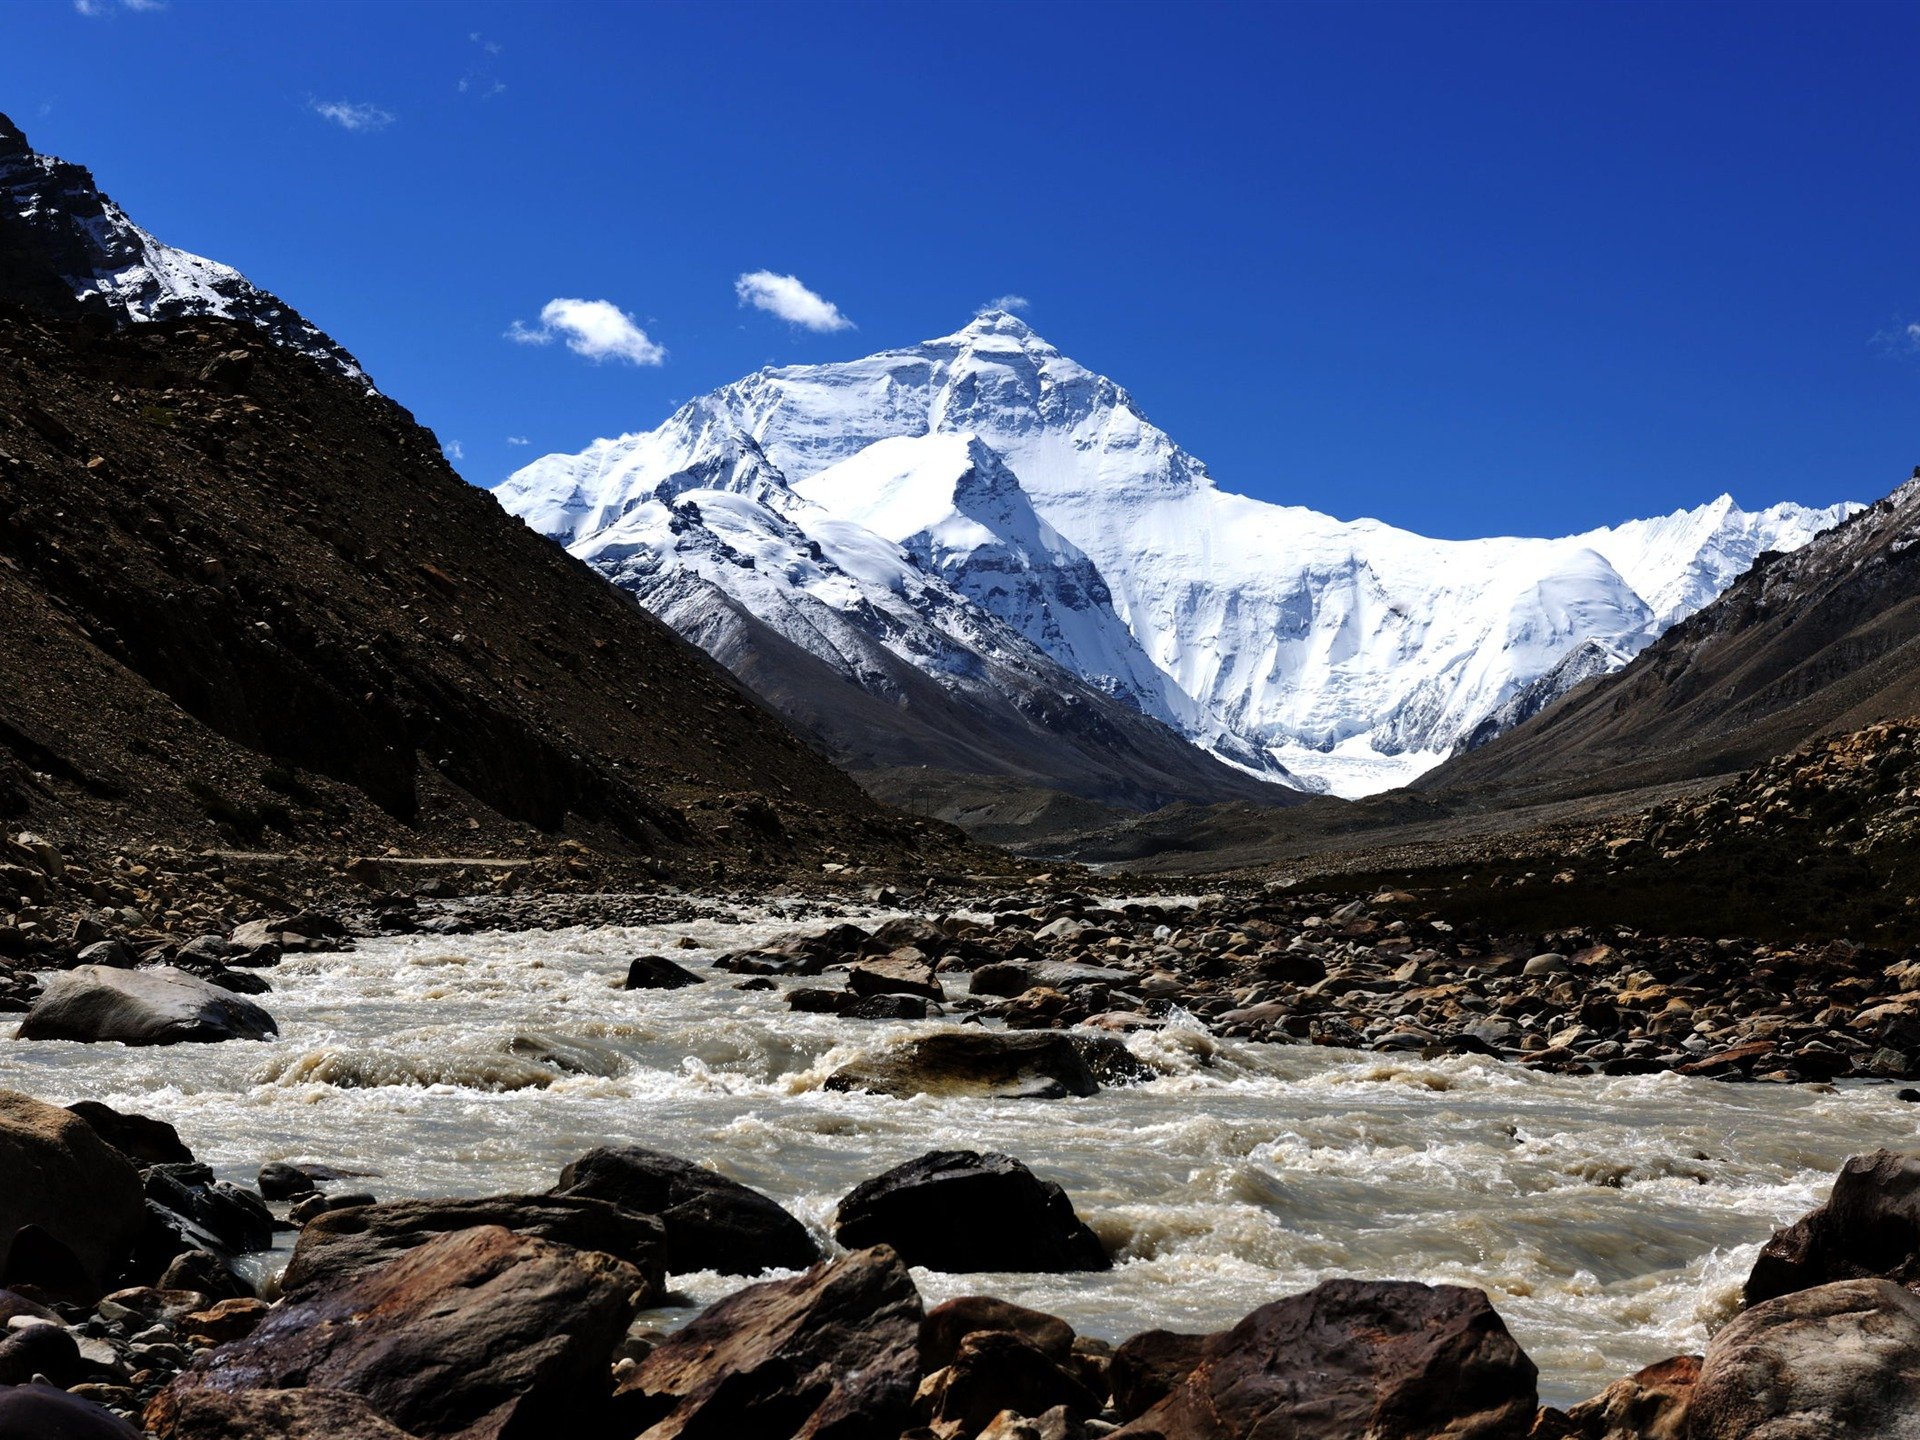 Памир гималаи. Тибет Эверест Гималаи. Тибет ...Памир...Гималаи. Эверест , Памир. Тибет Гималаи Лхаса.